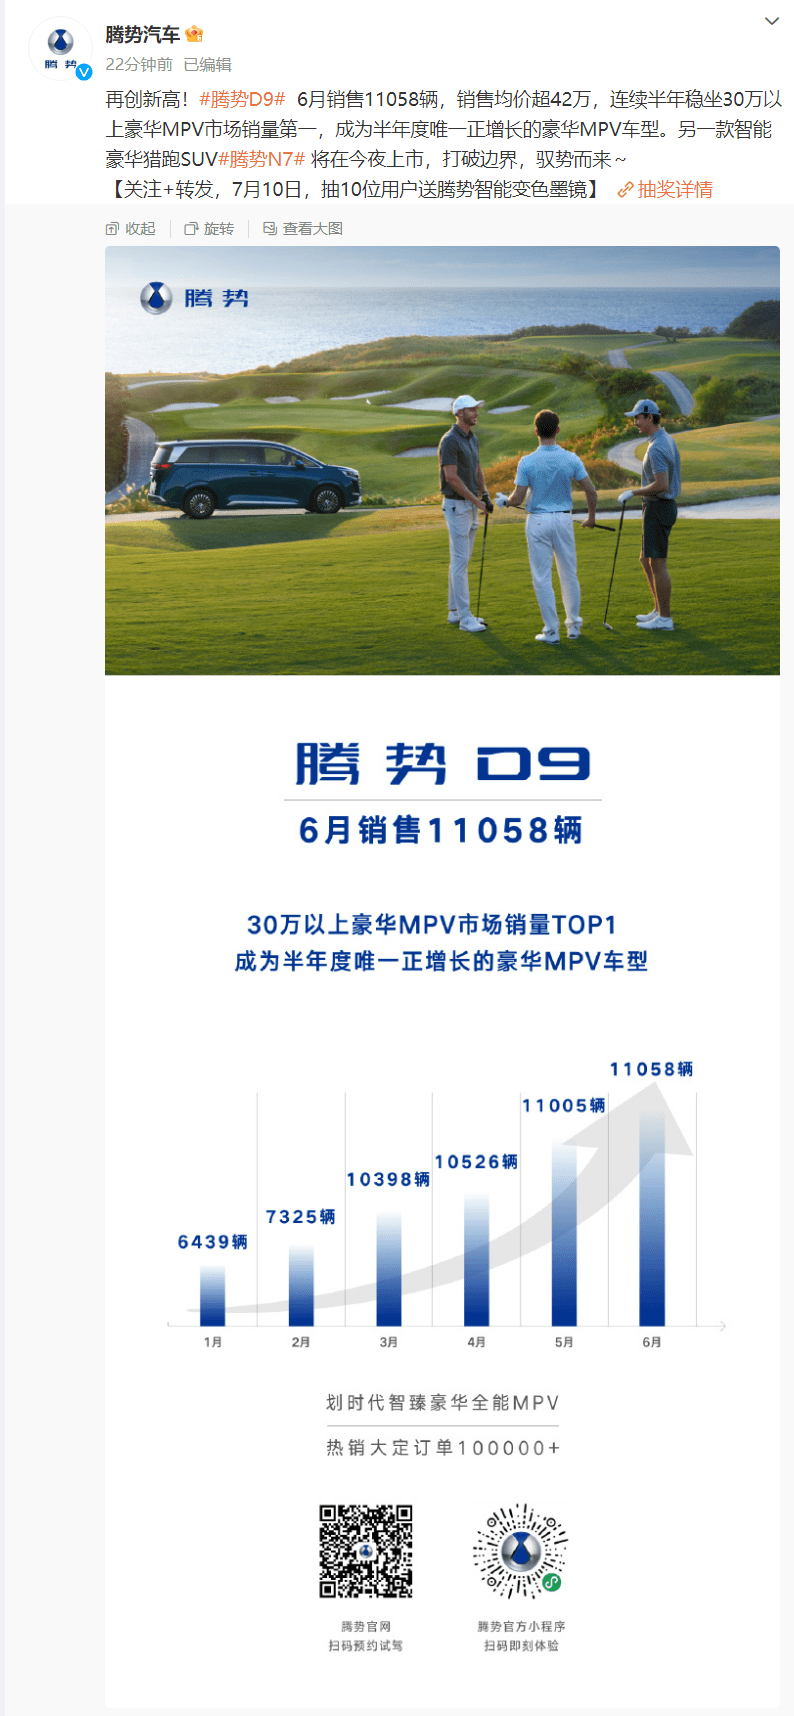 腾势汽车公布6月销量：腾势D9单月销售11058辆 销售均价超42万